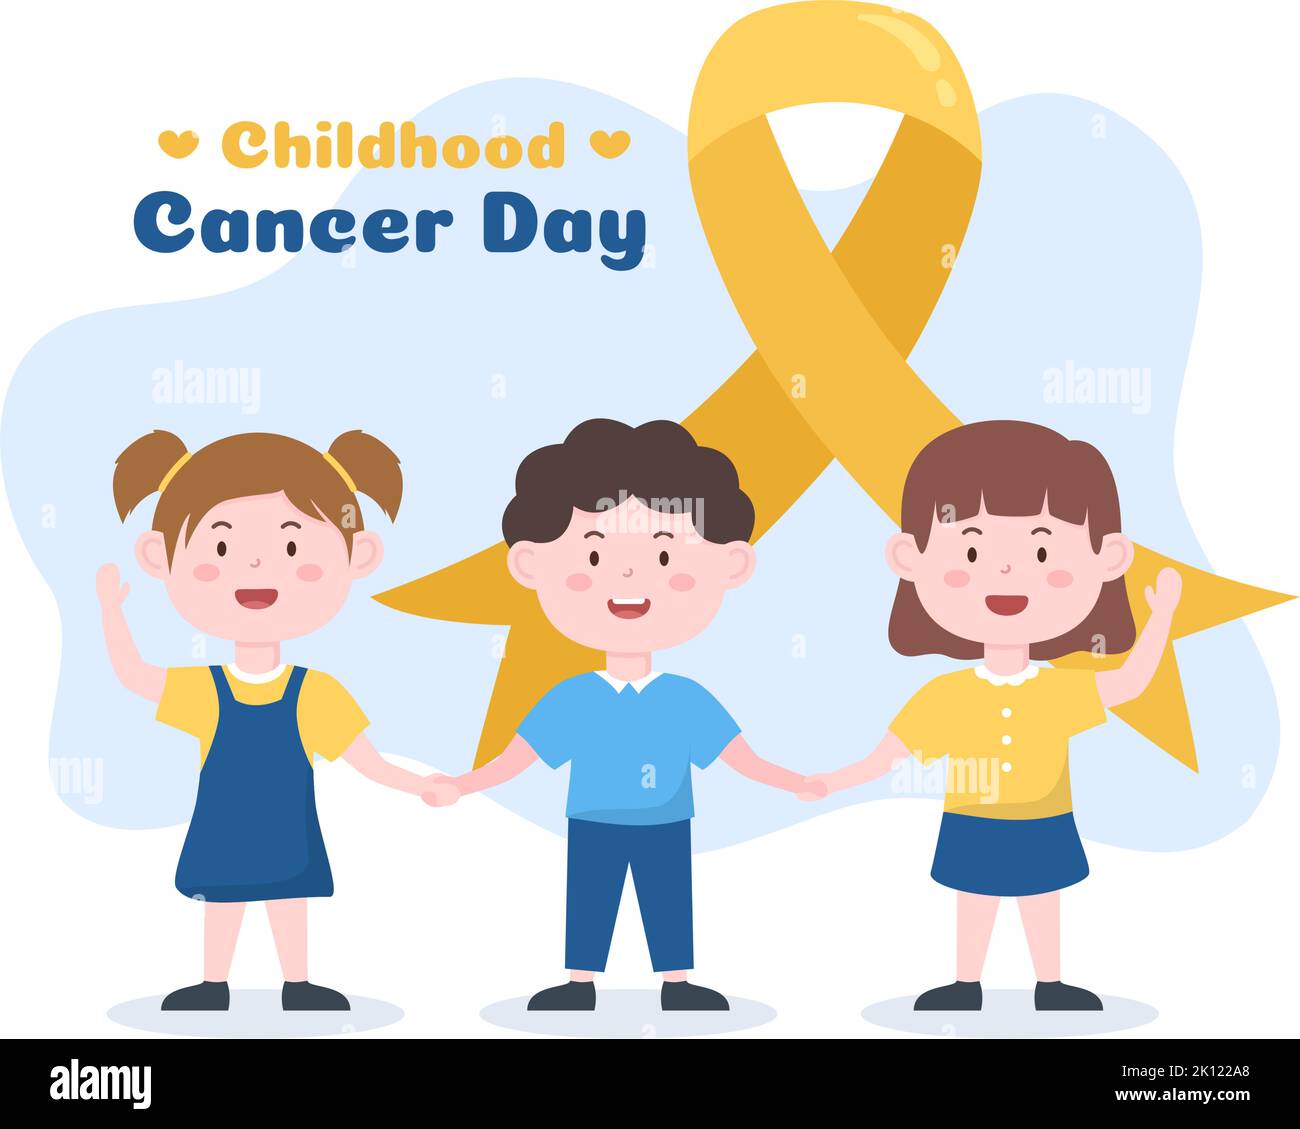 Handgezeichnetes Cartoon-Bild zum Internationalen Tag des Krebses im Kindesalter am 15. Februar zur Spendenbeschaffung, zur Förderung der Prävention und zur ausdrücklichen Unterstützung Stock Vektor